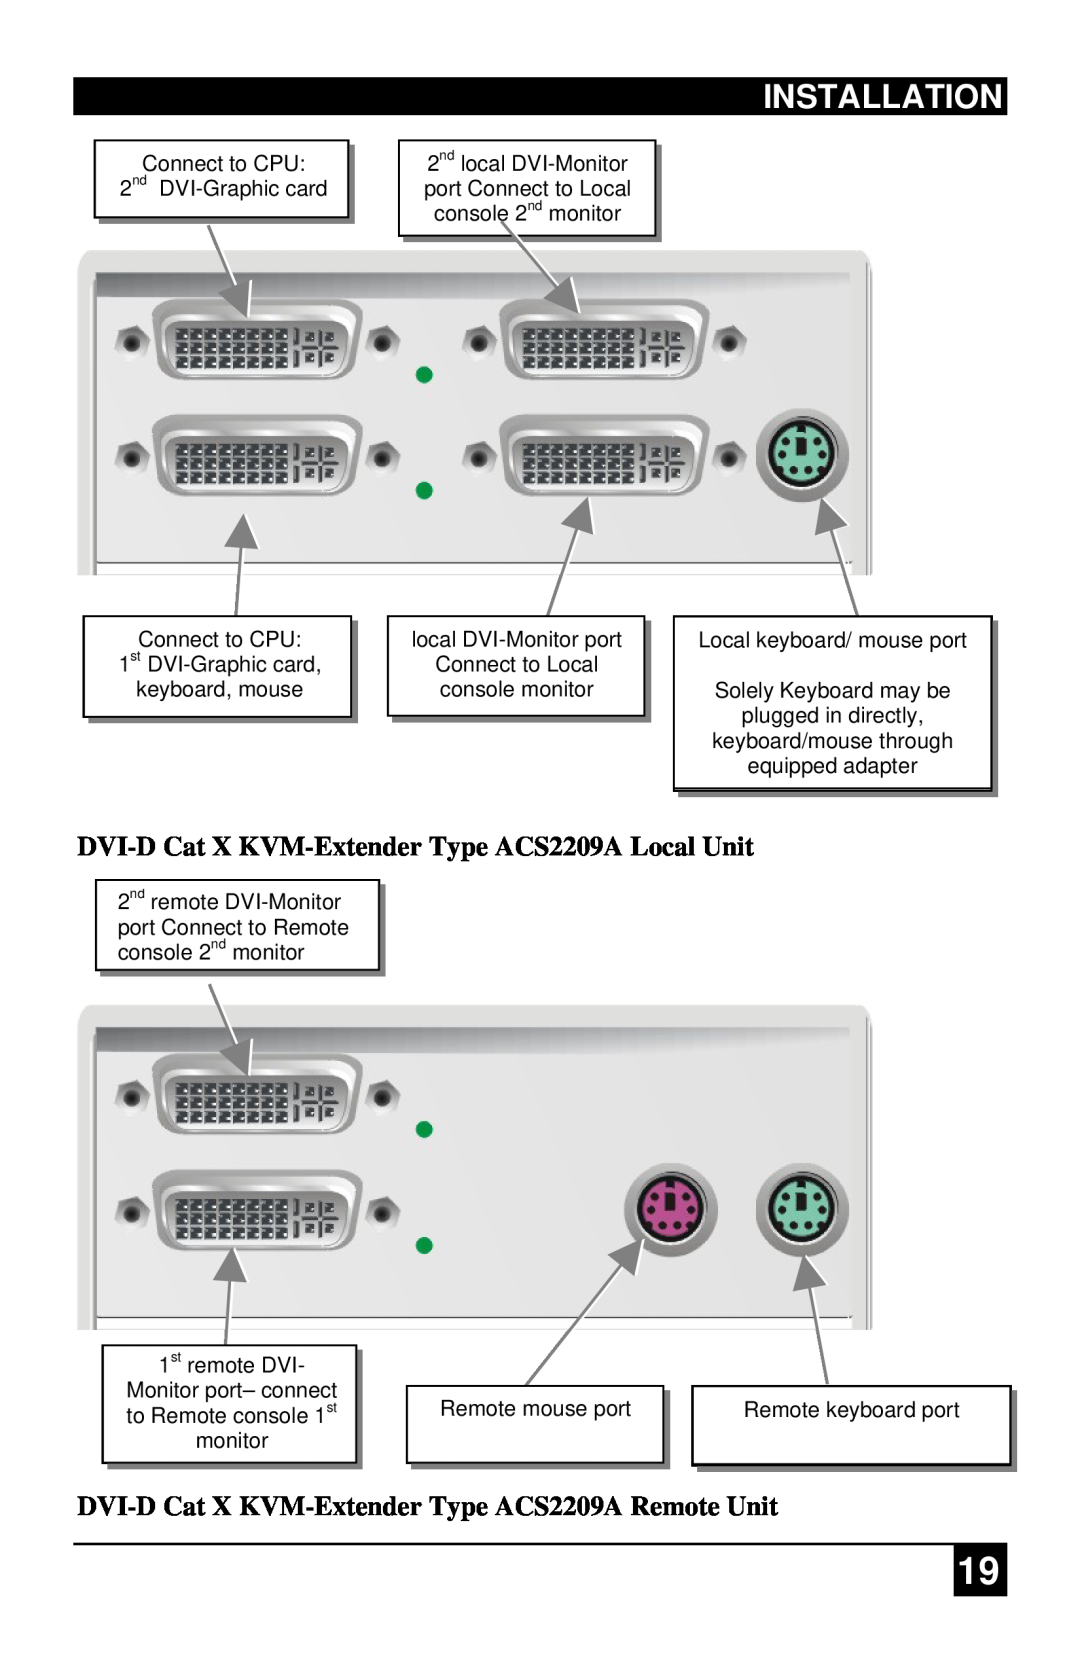 Black Box ACS4201A, ACS1009A manual Installation, DVI-DCat X KVM-ExtenderType ACS2209A Local Unit 